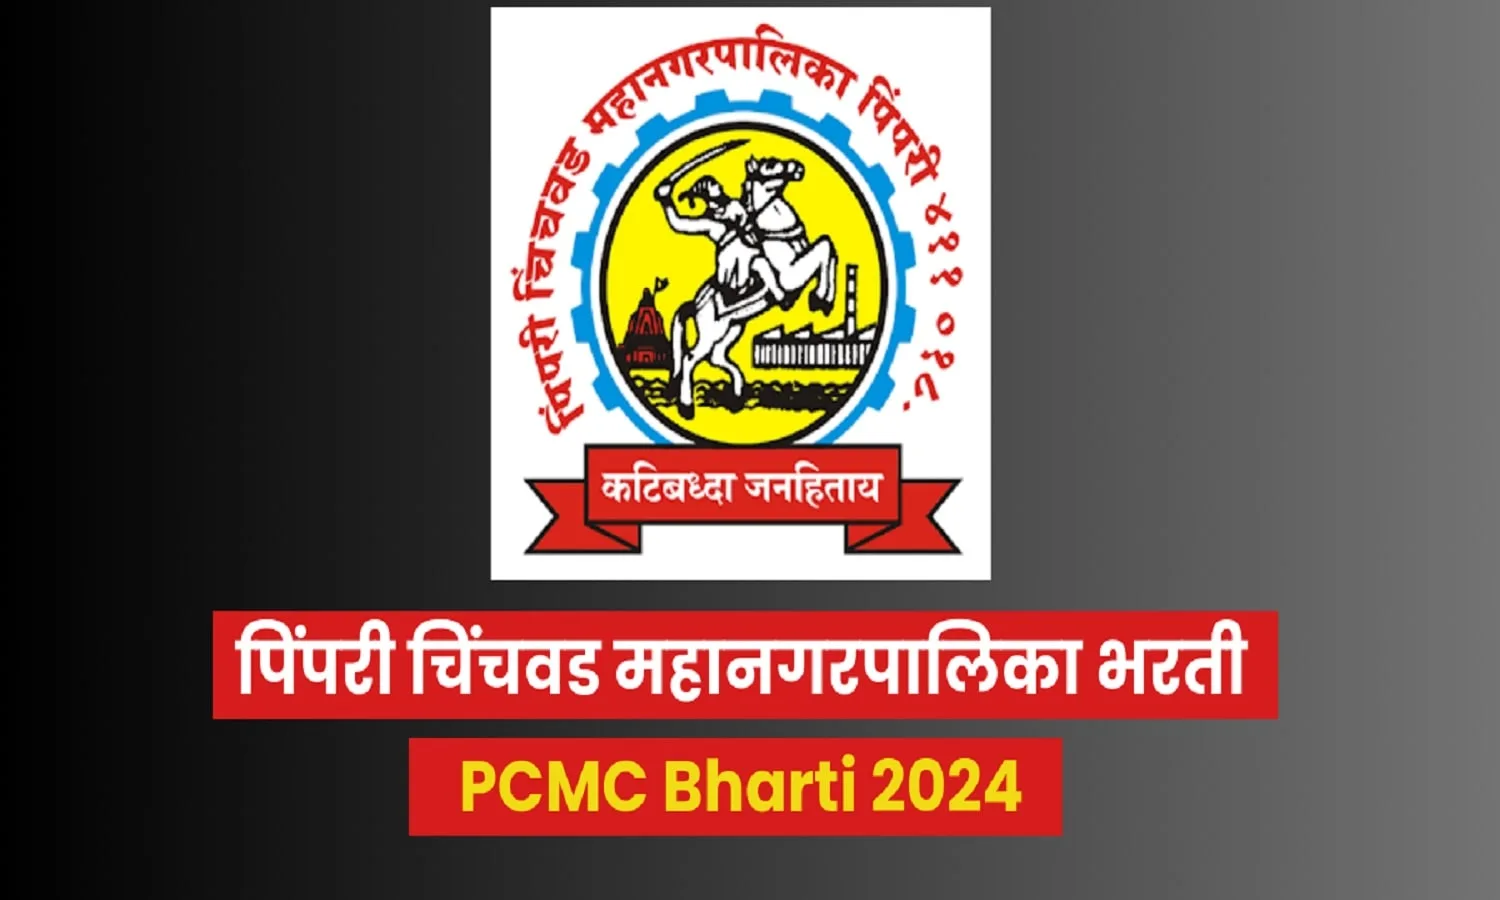 PCMC Recruitment 2024: 10 वीं पास के लिए सुनहरा मौका! एज लिमिट 39 वर्ष